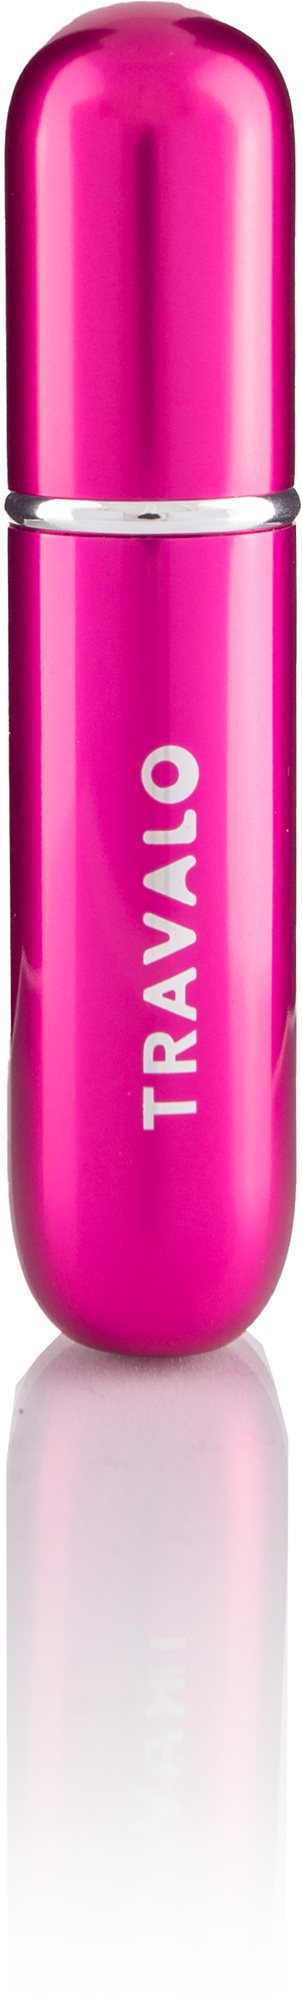 Travalo Classic HD - újratölthető flakon 5 ml (rózsaszín)